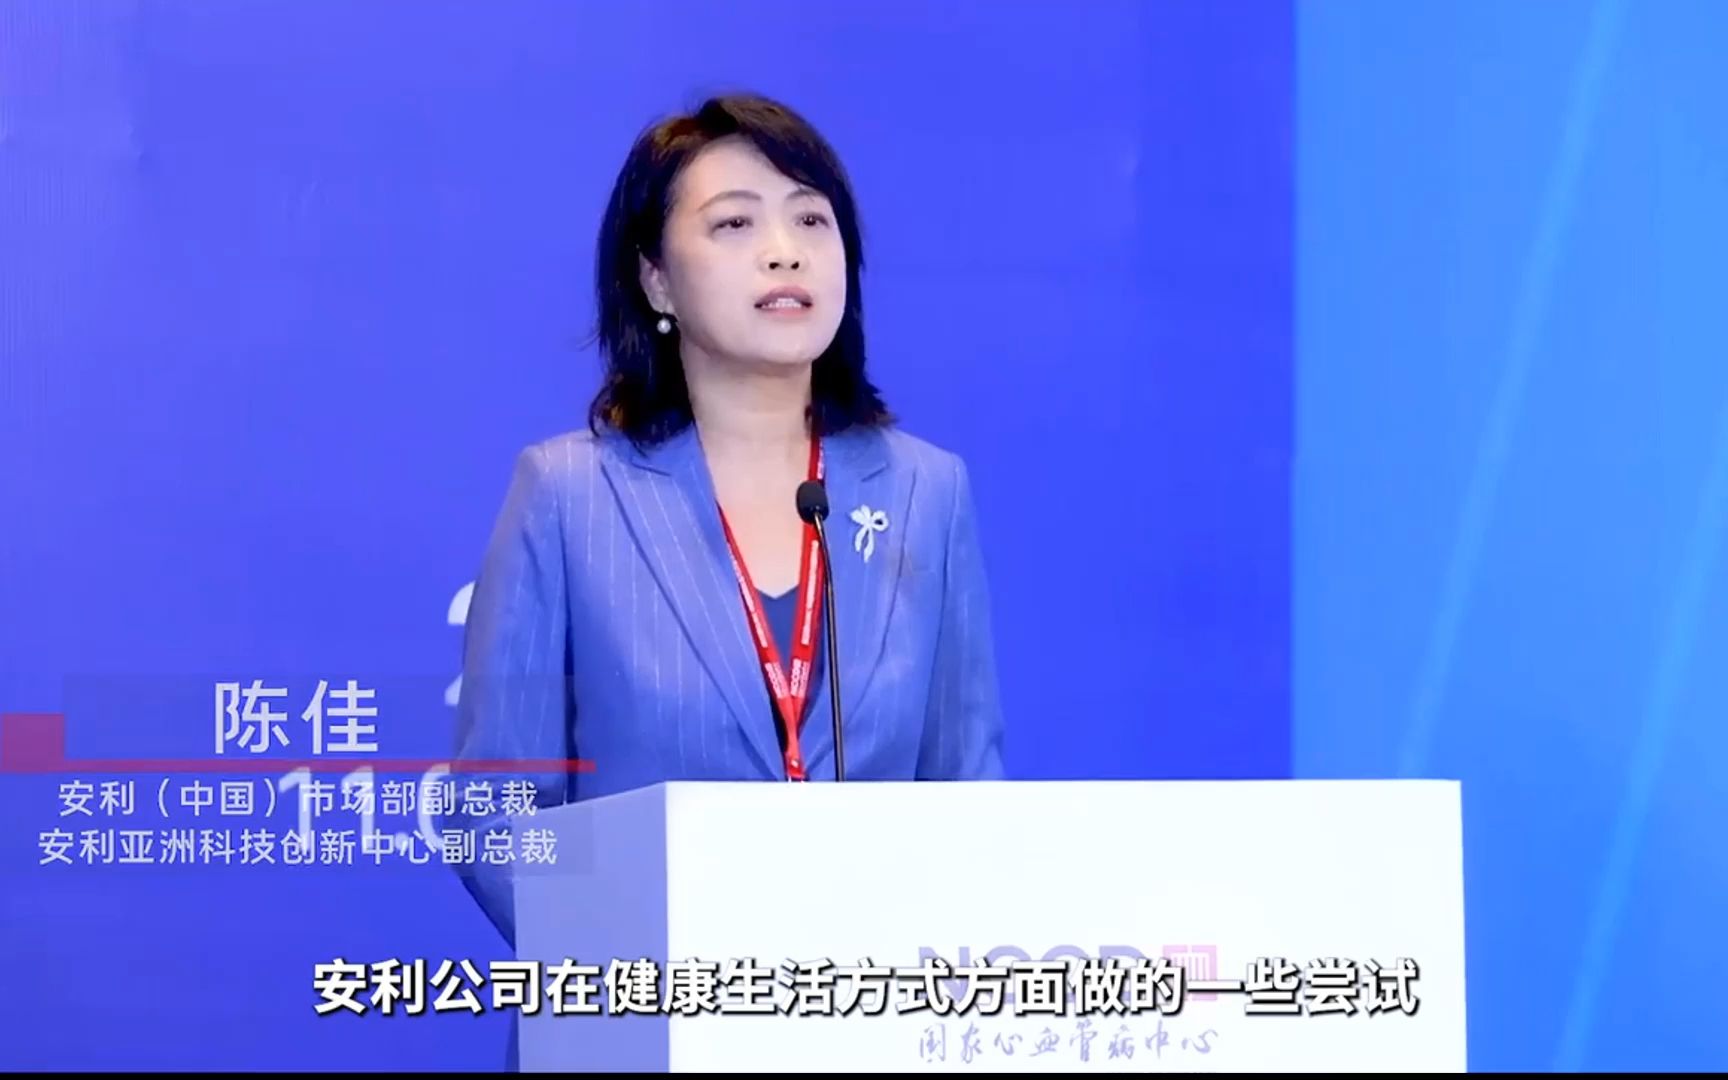 中国健康生活方式医学大会,安利(中国)市场部副总裁陈佳现场分享,安利